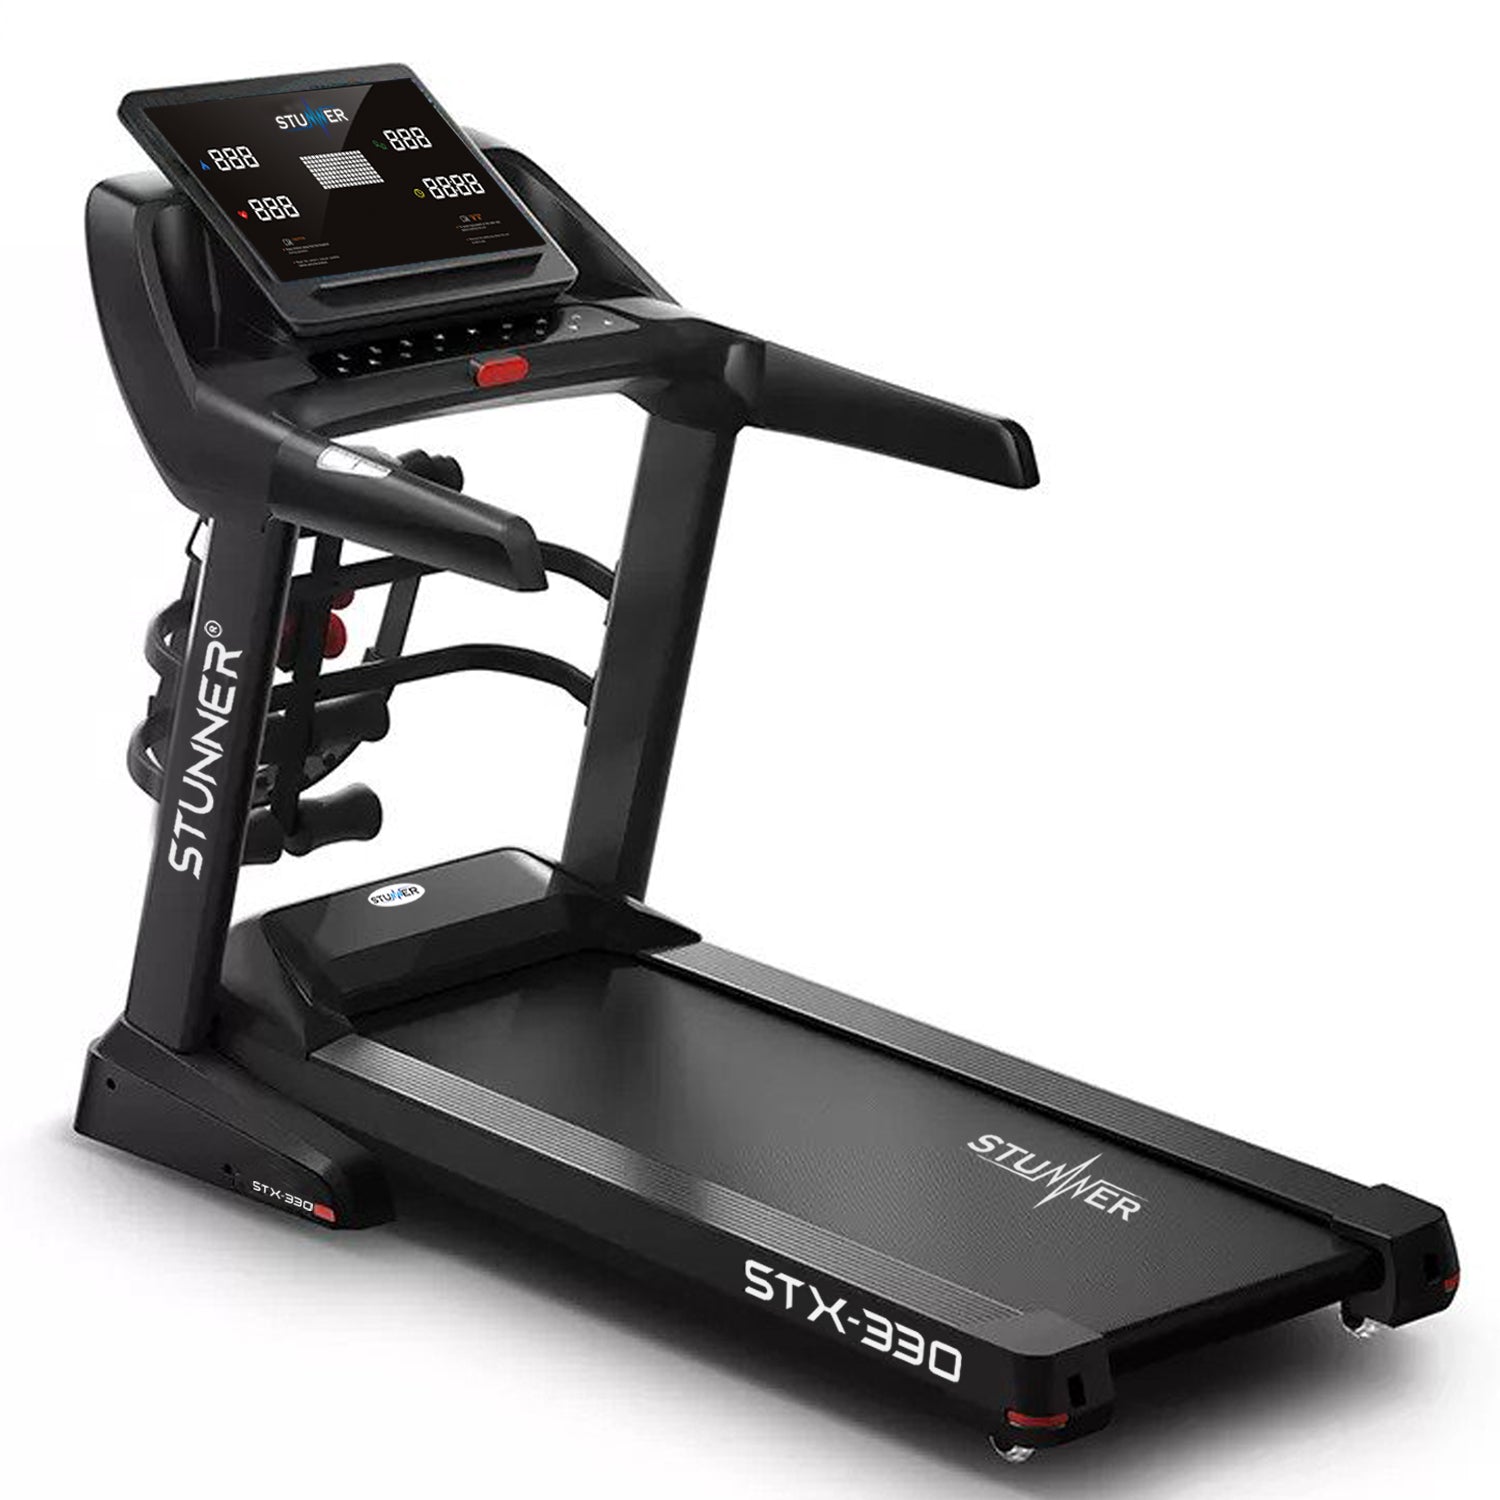 STX-330 Motorized Treadmill